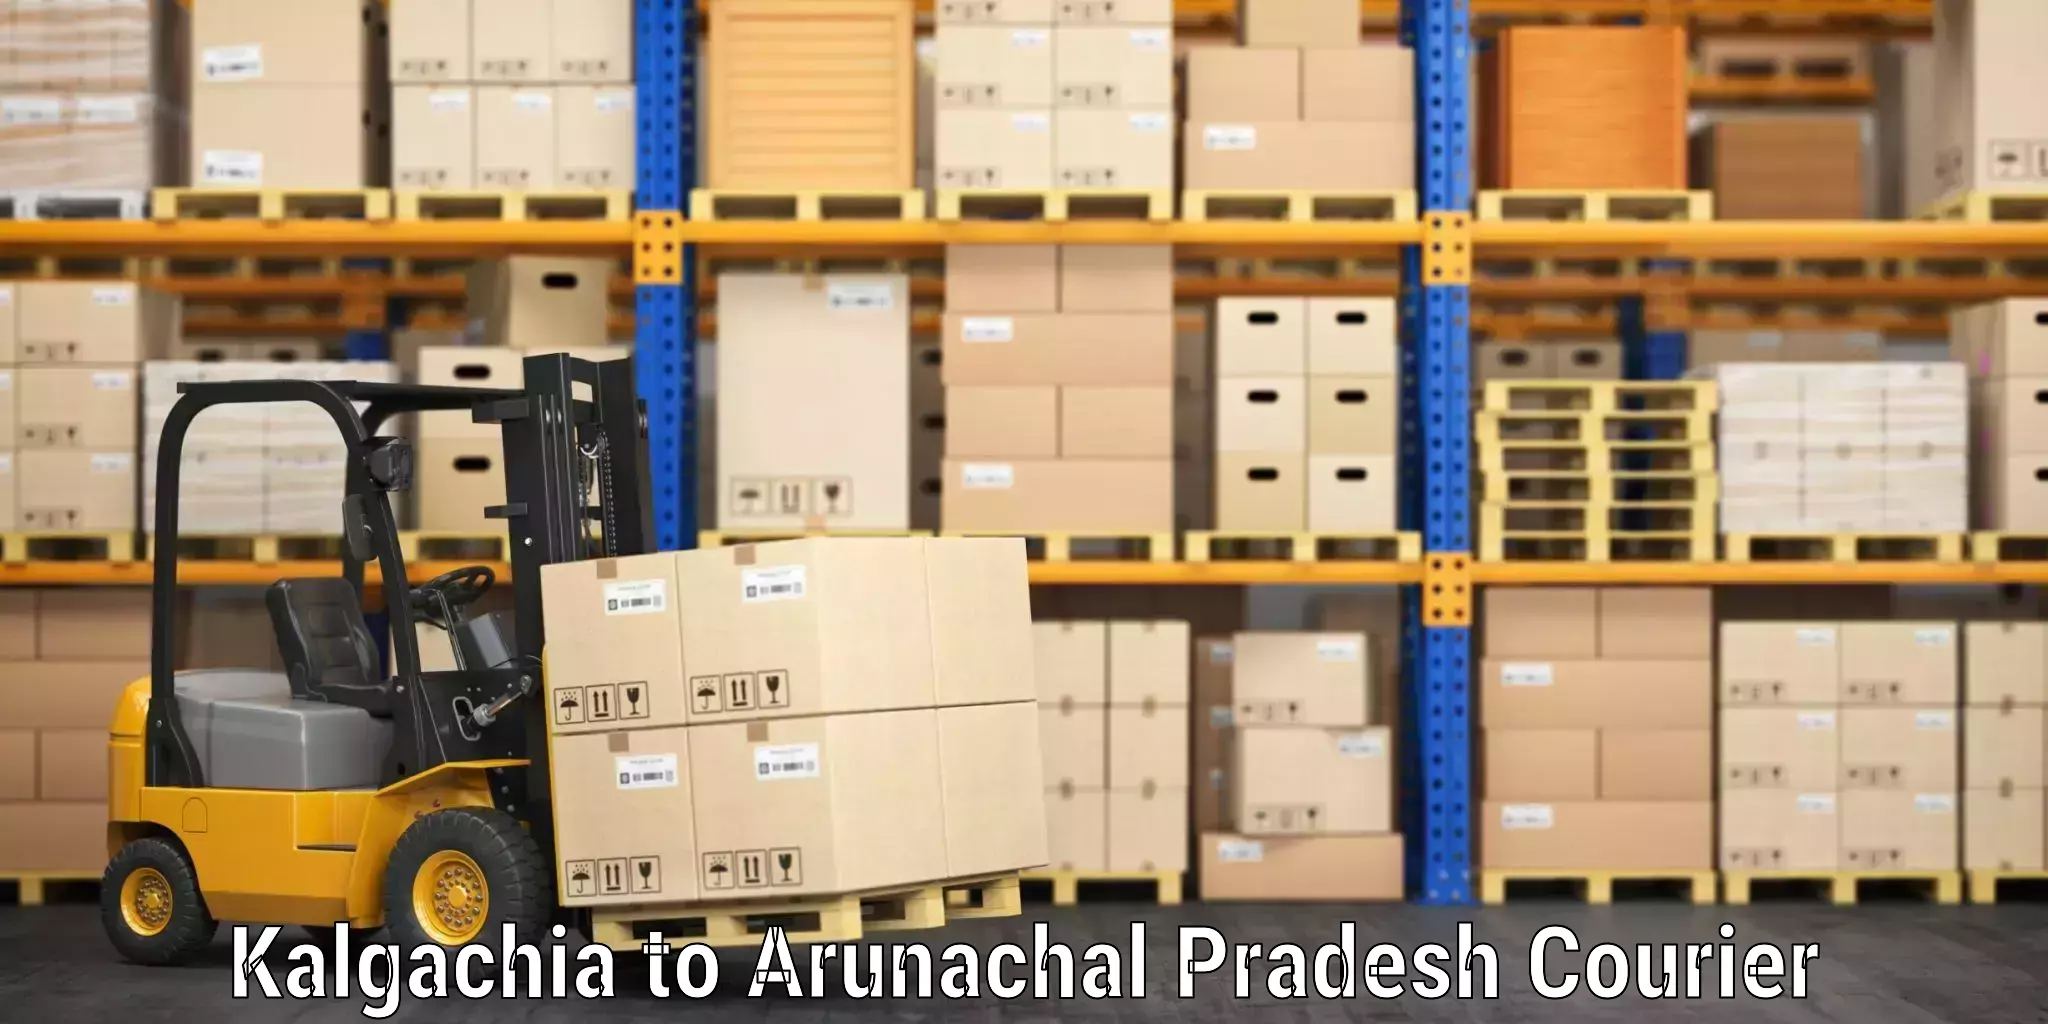 Hassle-free luggage shipping Kalgachia to Arunachal Pradesh